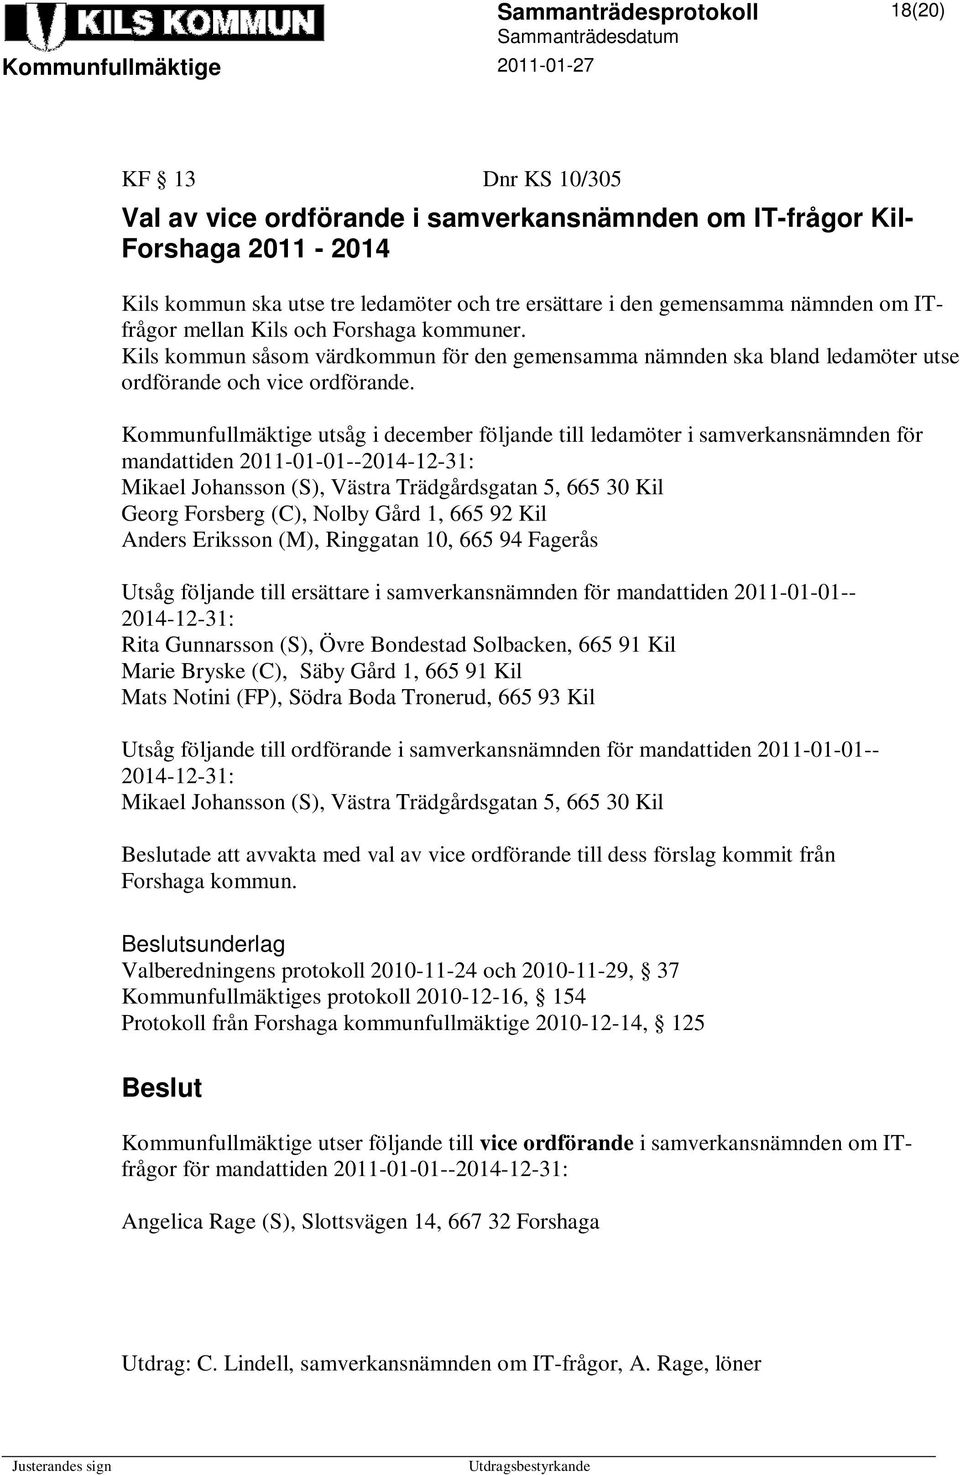 Kommunfullmäktige utsåg i december följande till ledamöter i samverkansnämnden för mandattiden 2011-01-01--2014-12-31: Mikael Johansson (S), Västra Trädgårdsgatan 5, 665 30 Kil Georg Forsberg (C),